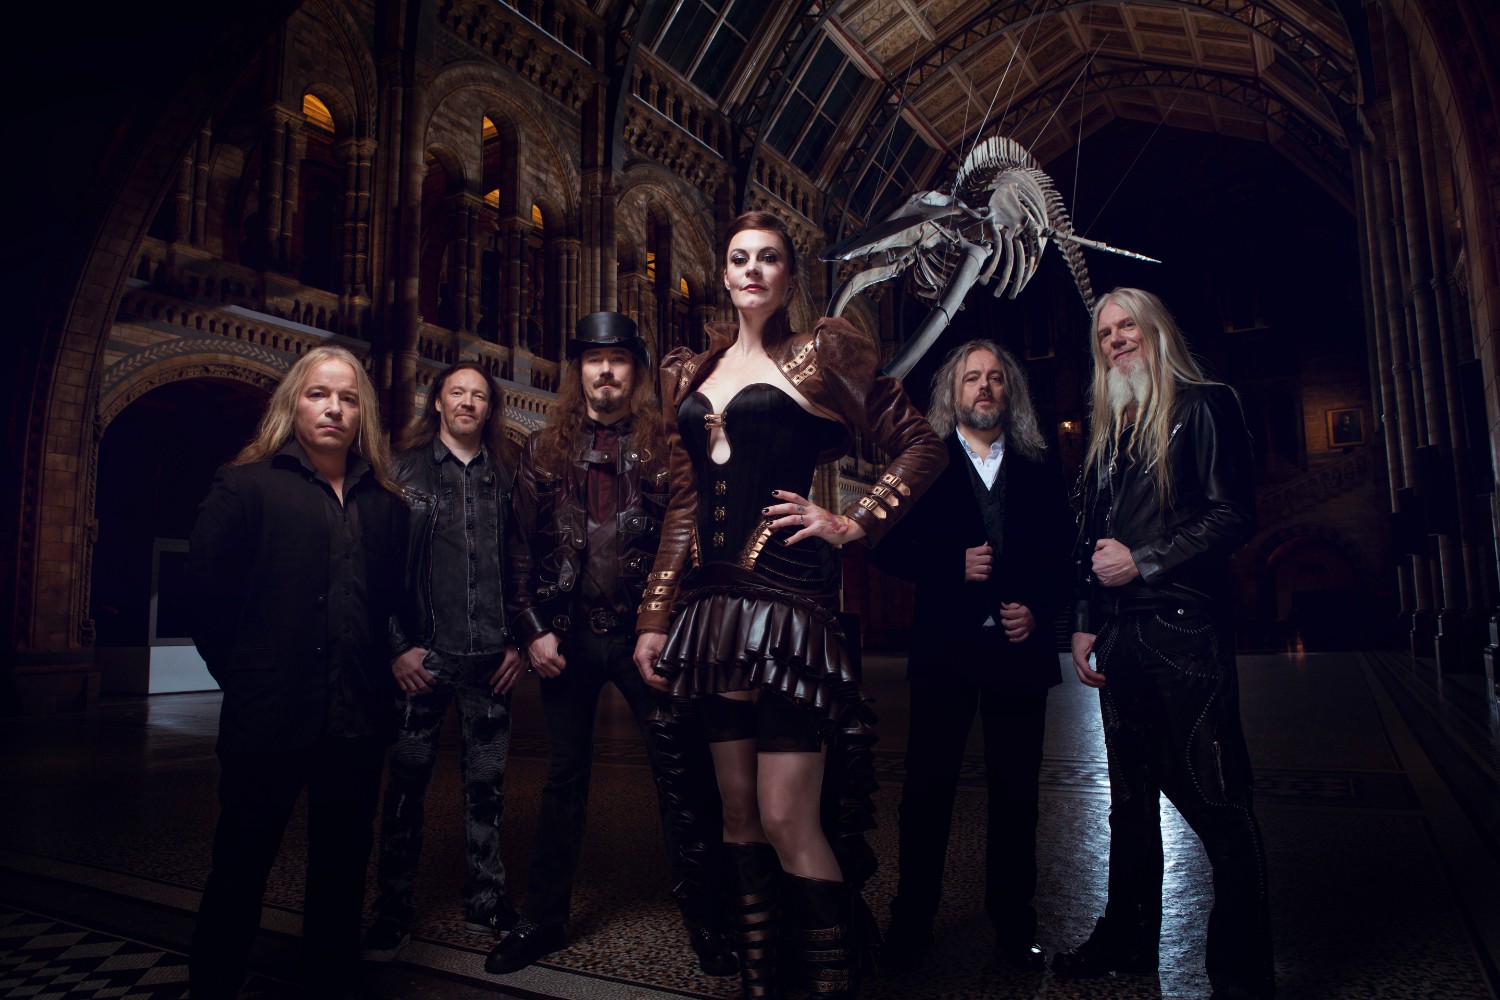 Tuomas Holopainen z Nightwish: Novinka nebola pôvodne zamýšľaná ako dvojalbum